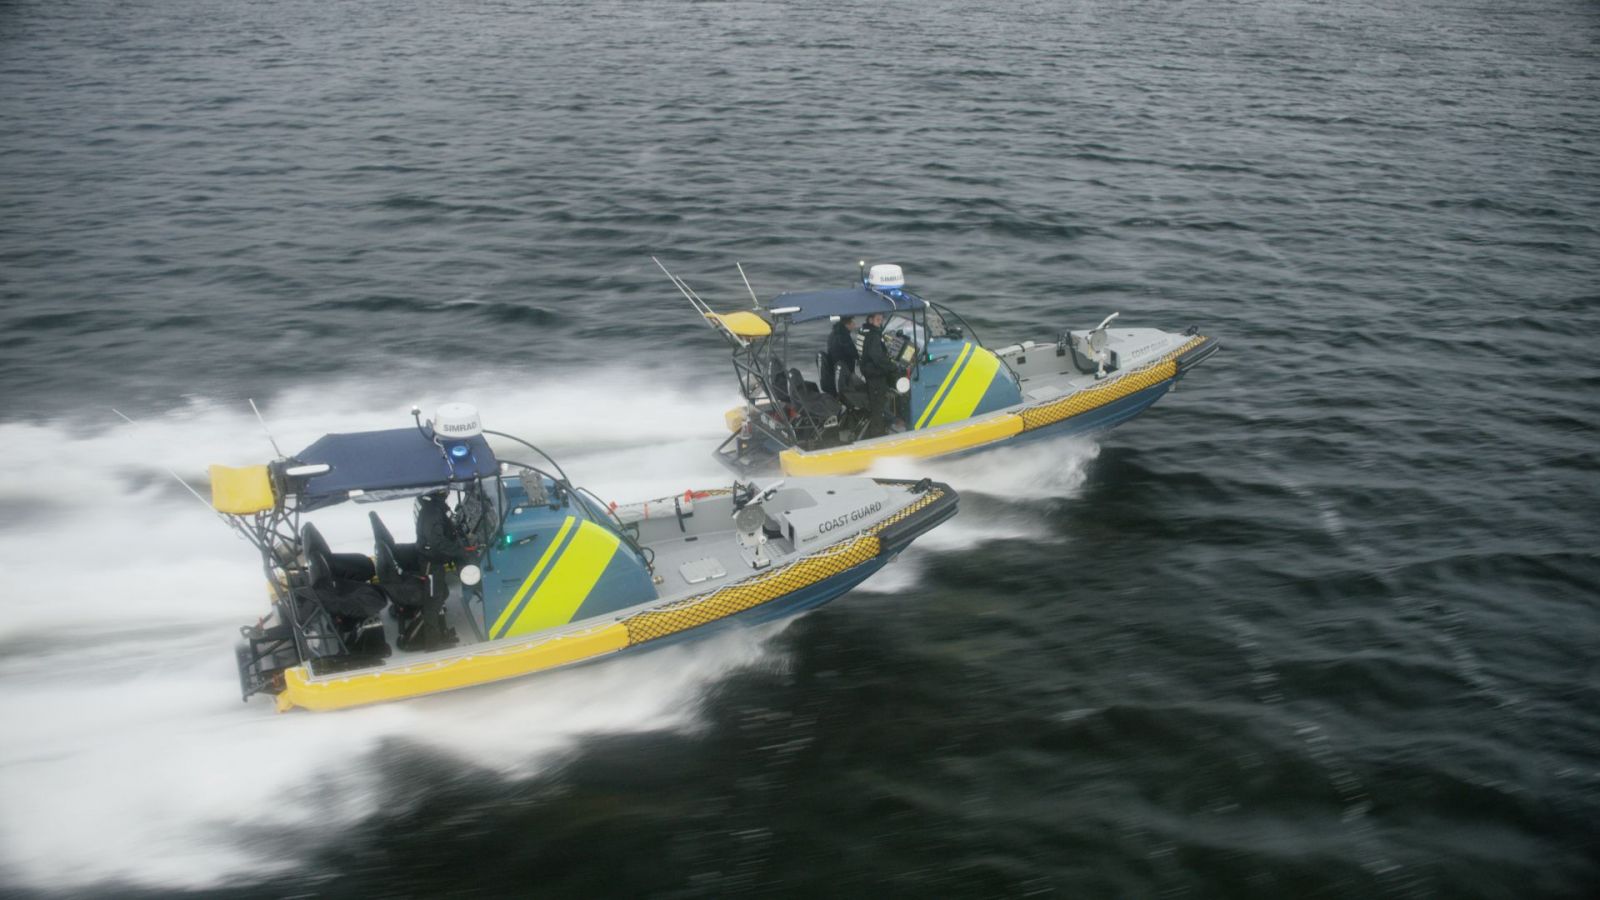 Magnum 750 MKII boat